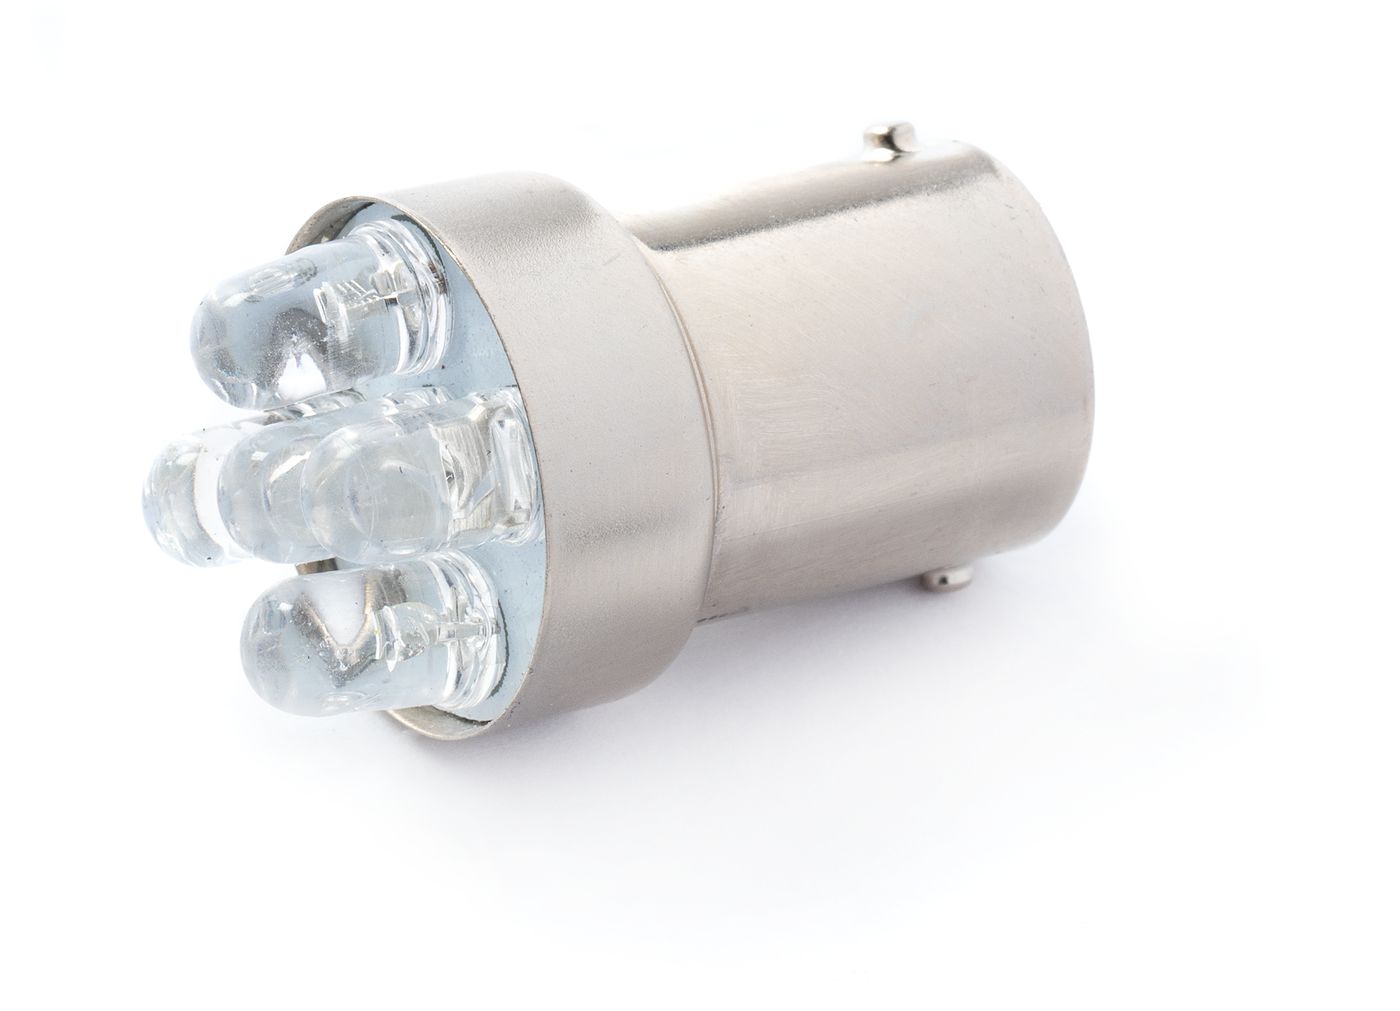 LED-Leuchte
LED lamp
Lampe à diode électroluminescente (DEL)
L